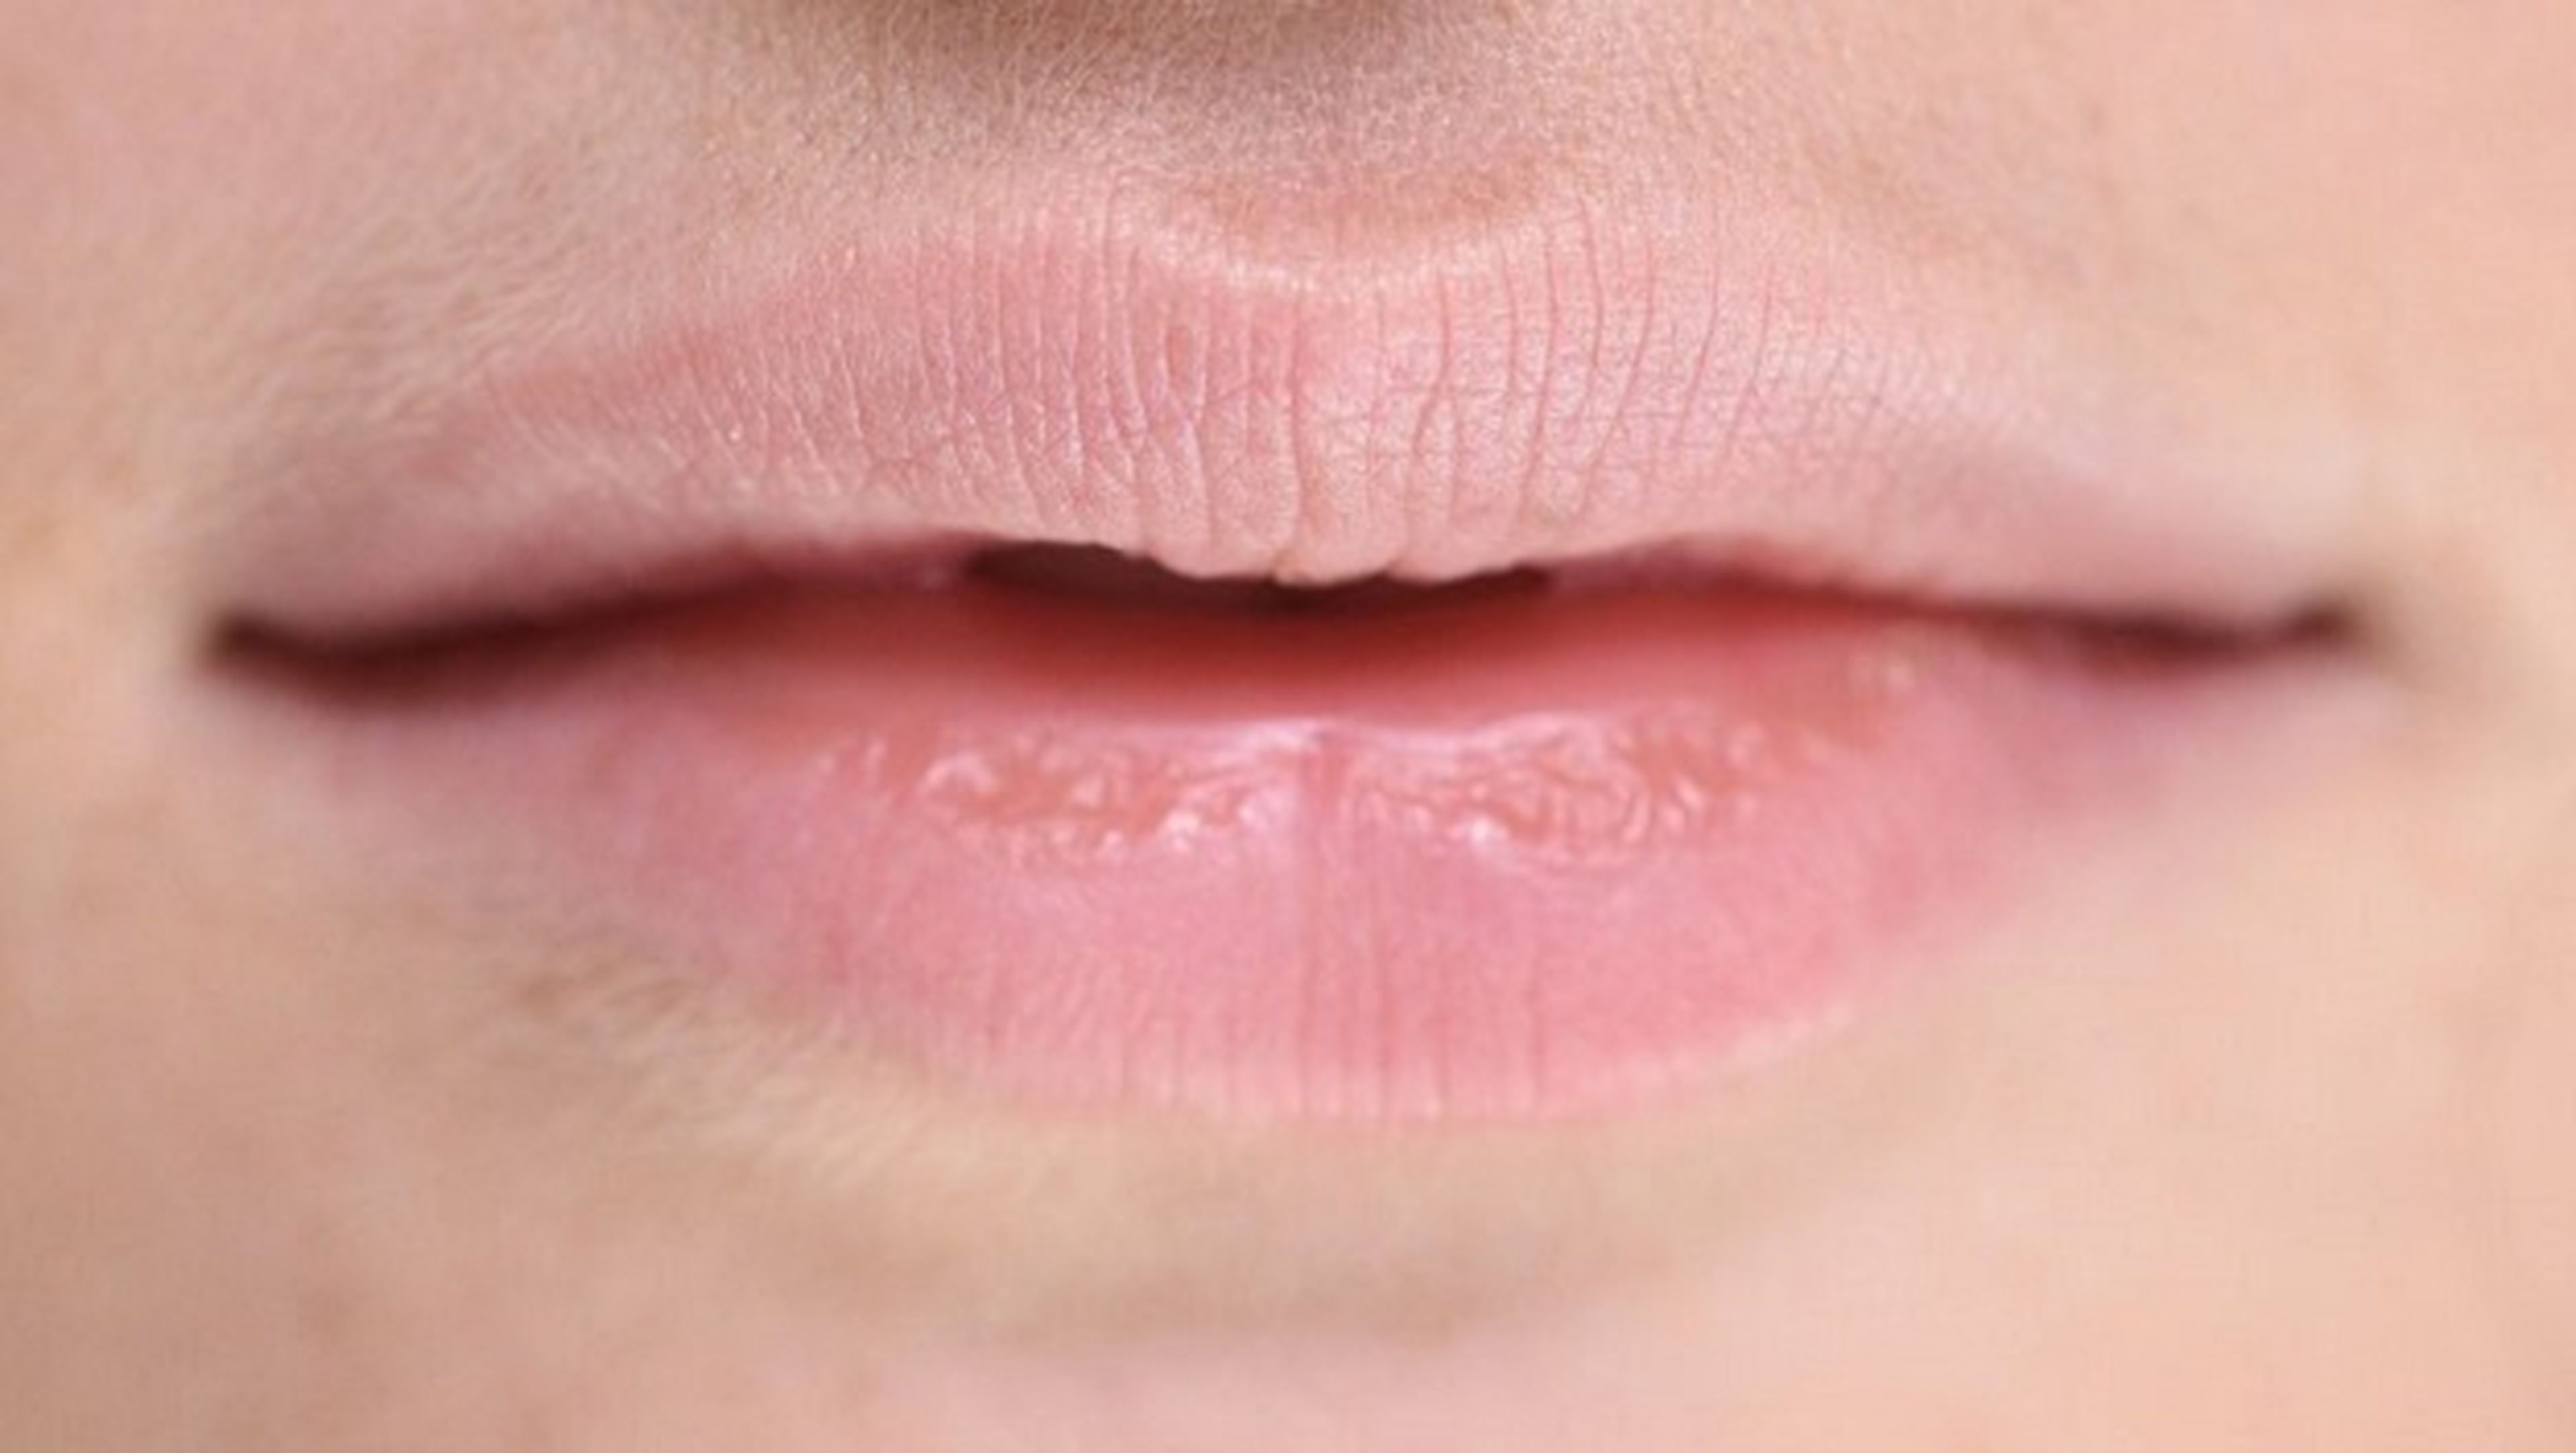 IA ayudaría a resolver el problema de la lectura de labios